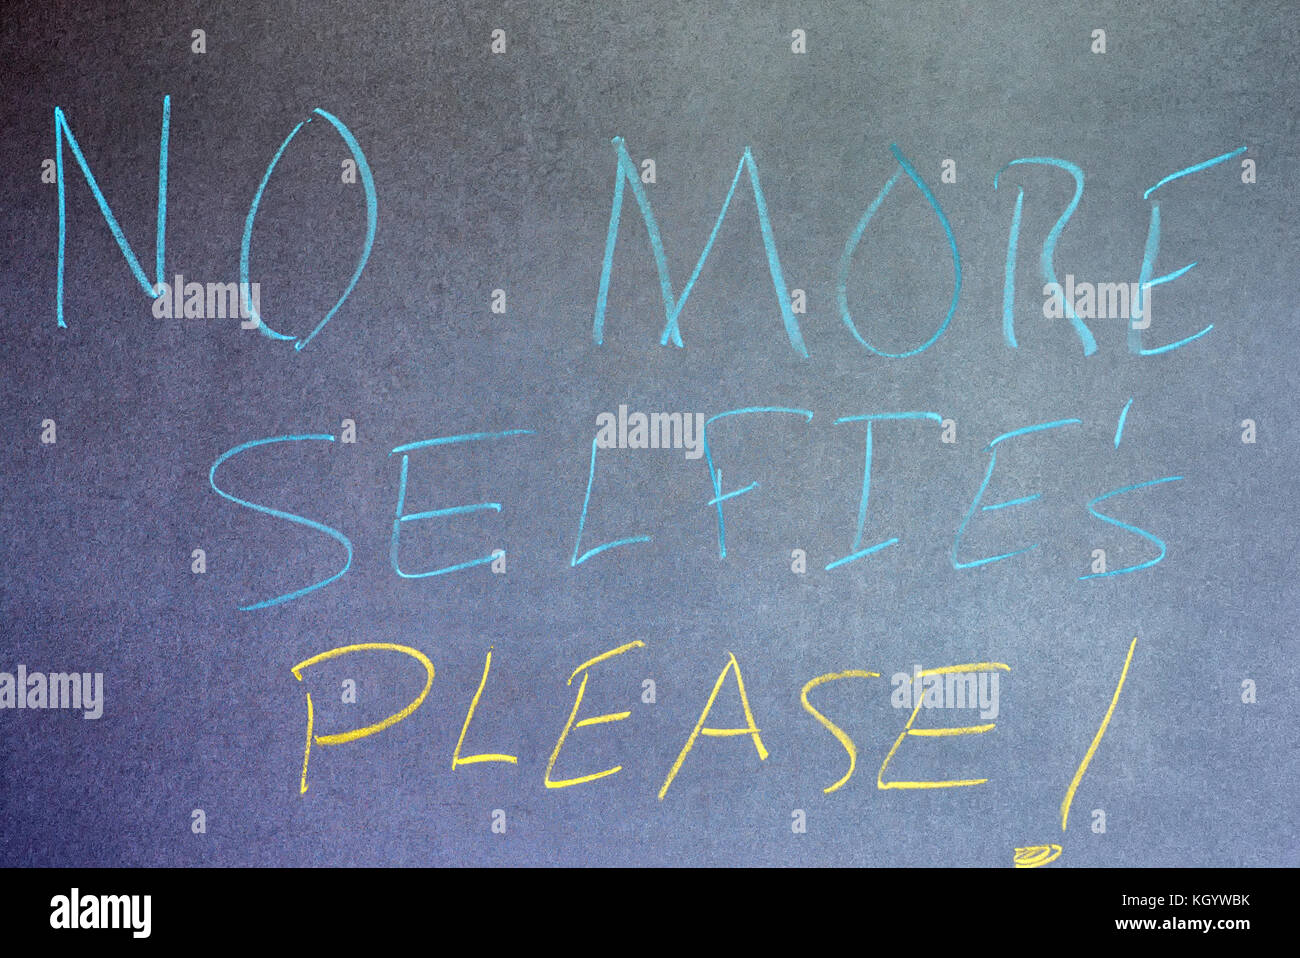 Phrase No More Selfie's Please! written on chalkboard background. Stock Photo